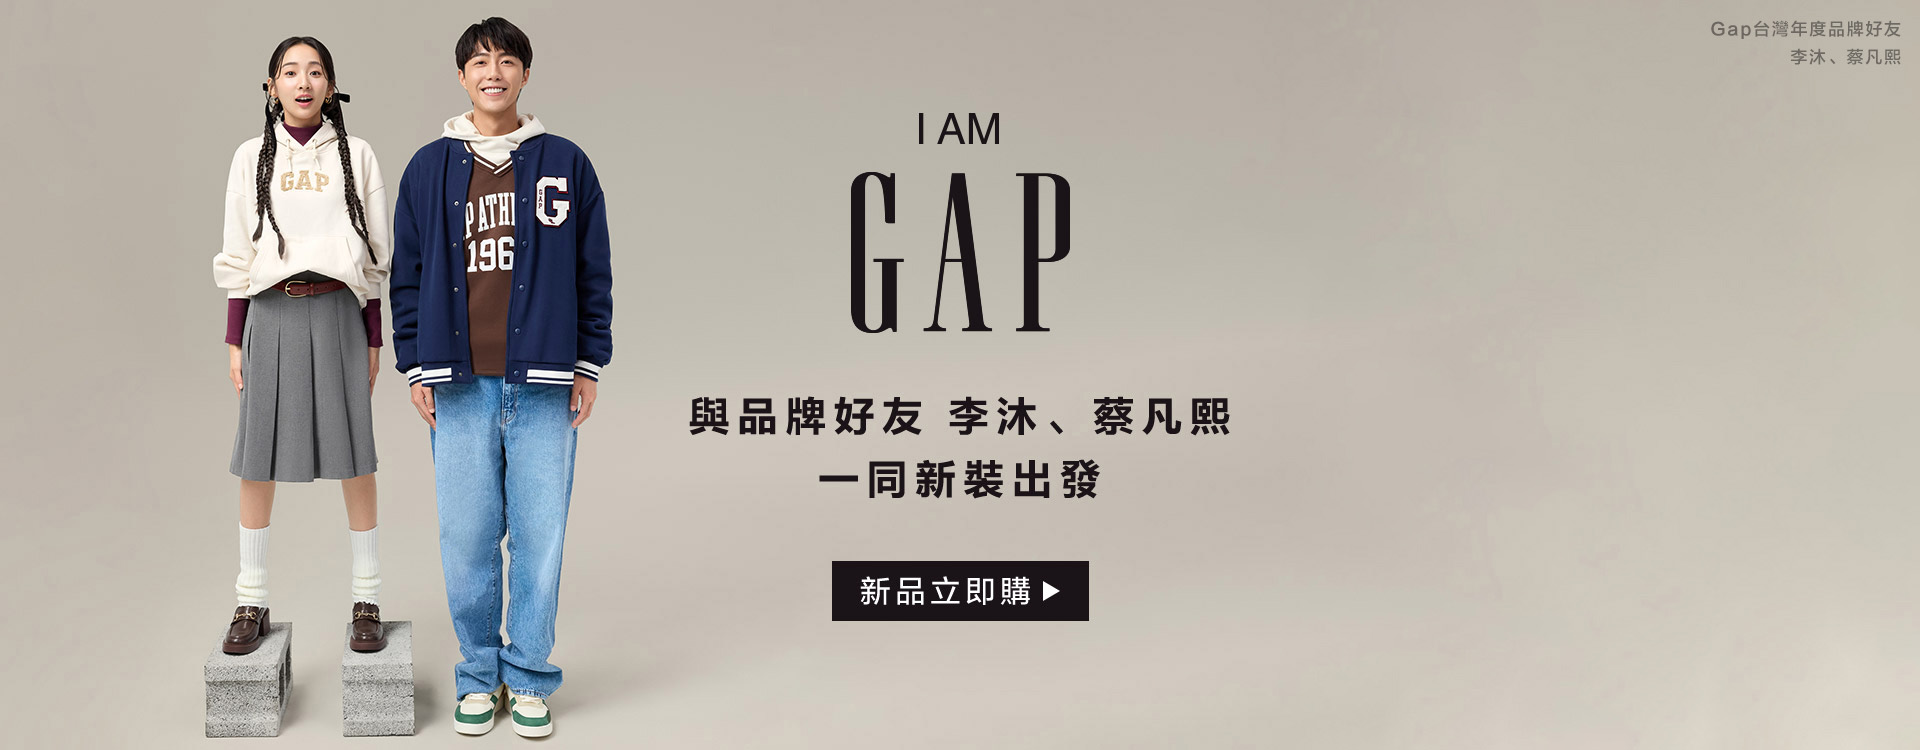 Gap品牌好友,李沐,蔡凡熙